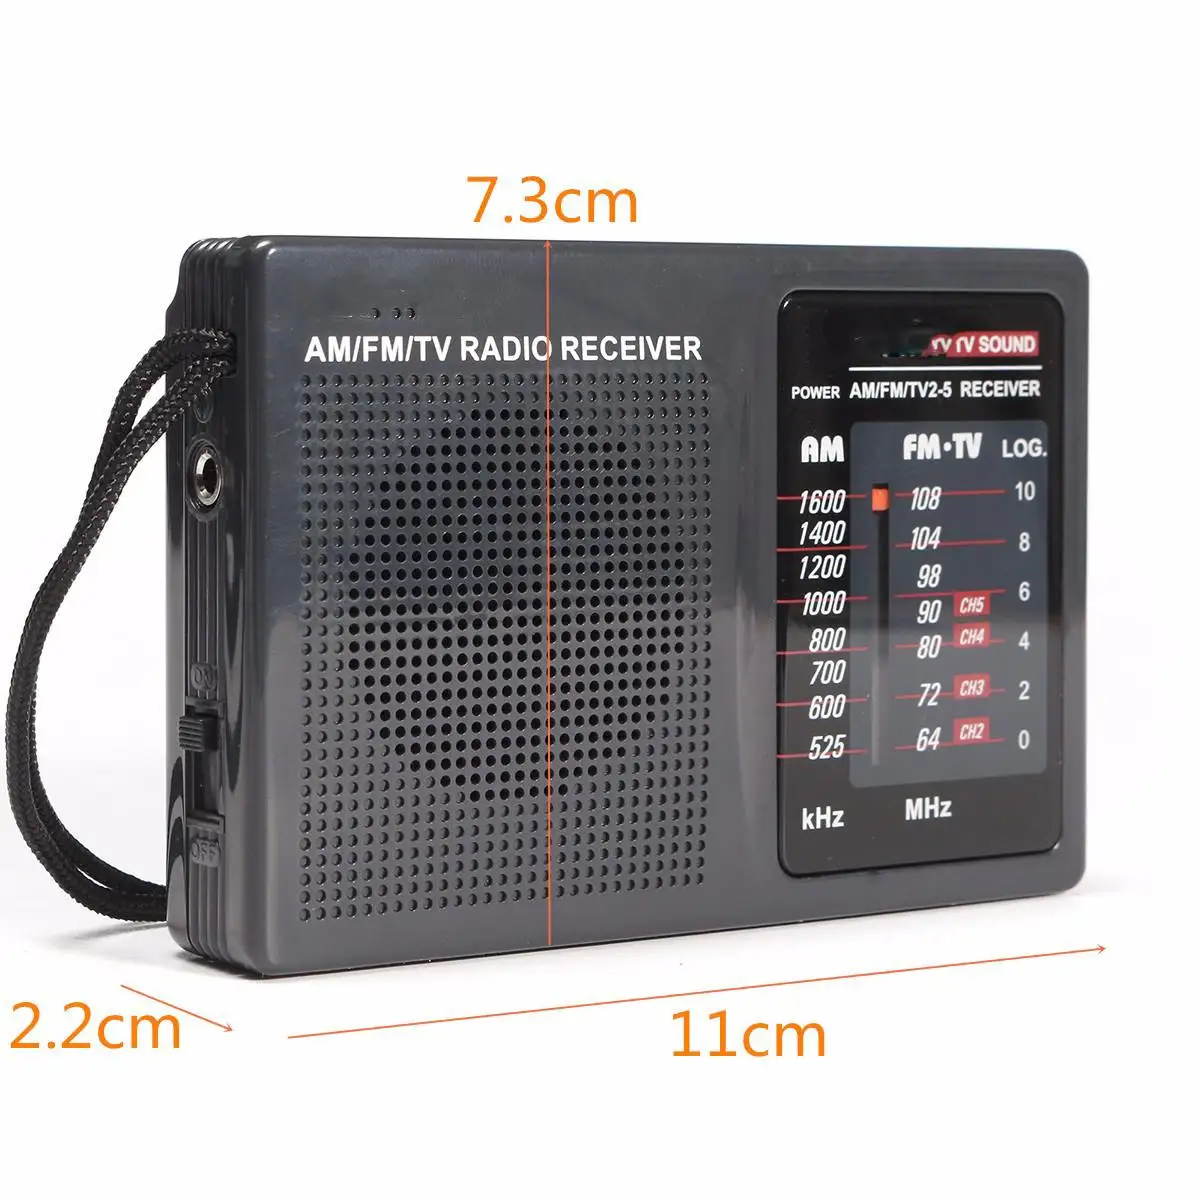 FM радио мини портативный AM FM ТВ приемник радио приемник высокая чувствительность FM приемник встроенный динамик музыкальный плеер подарки для пожилых